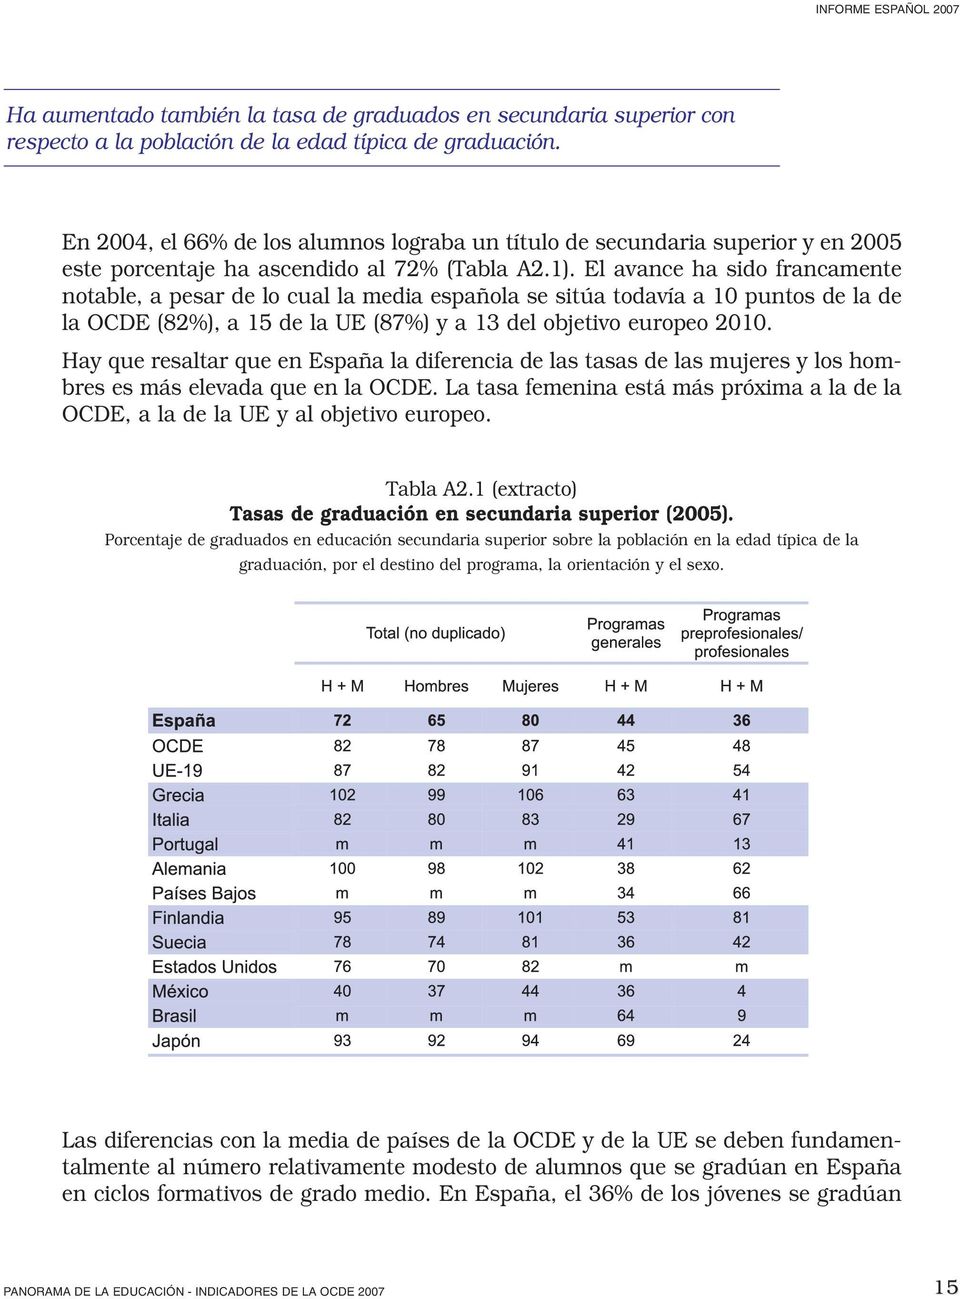 El avance ha sido francamente notable, a pesar de lo cual la media española se sitúa todavía a 10 puntos de la de la OCDE (82%), a 15 de la UE (87%) y a 13 del objetivo europeo 2010.